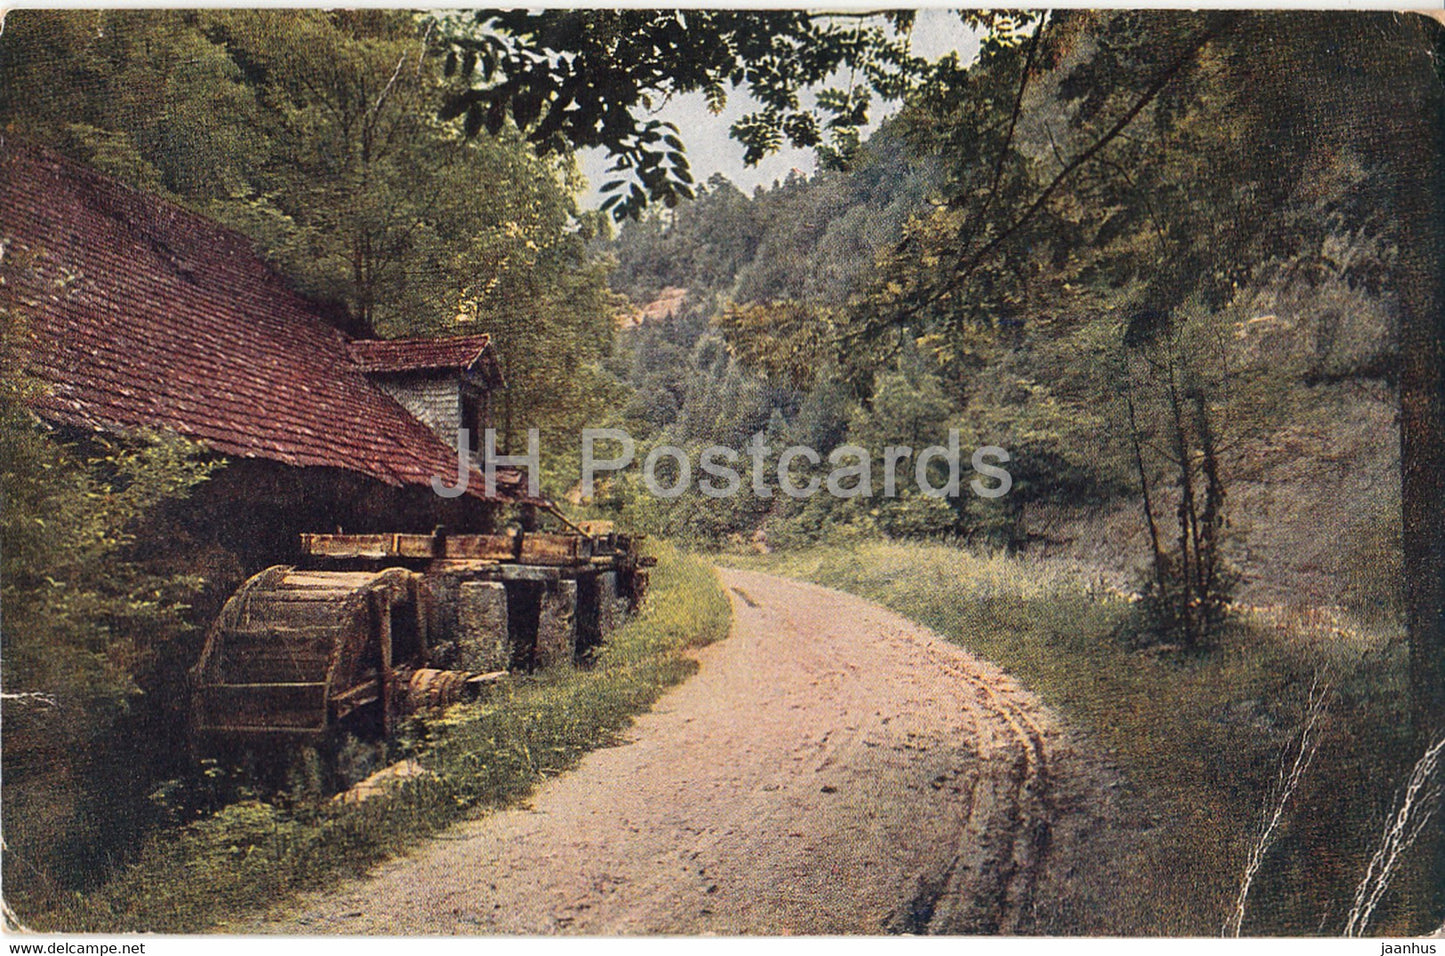 watermill - road - Kunstlerkarte - 2671 - Serie 201 - FPG - old postcard - 1919 -  Germany - used - JH Postcards